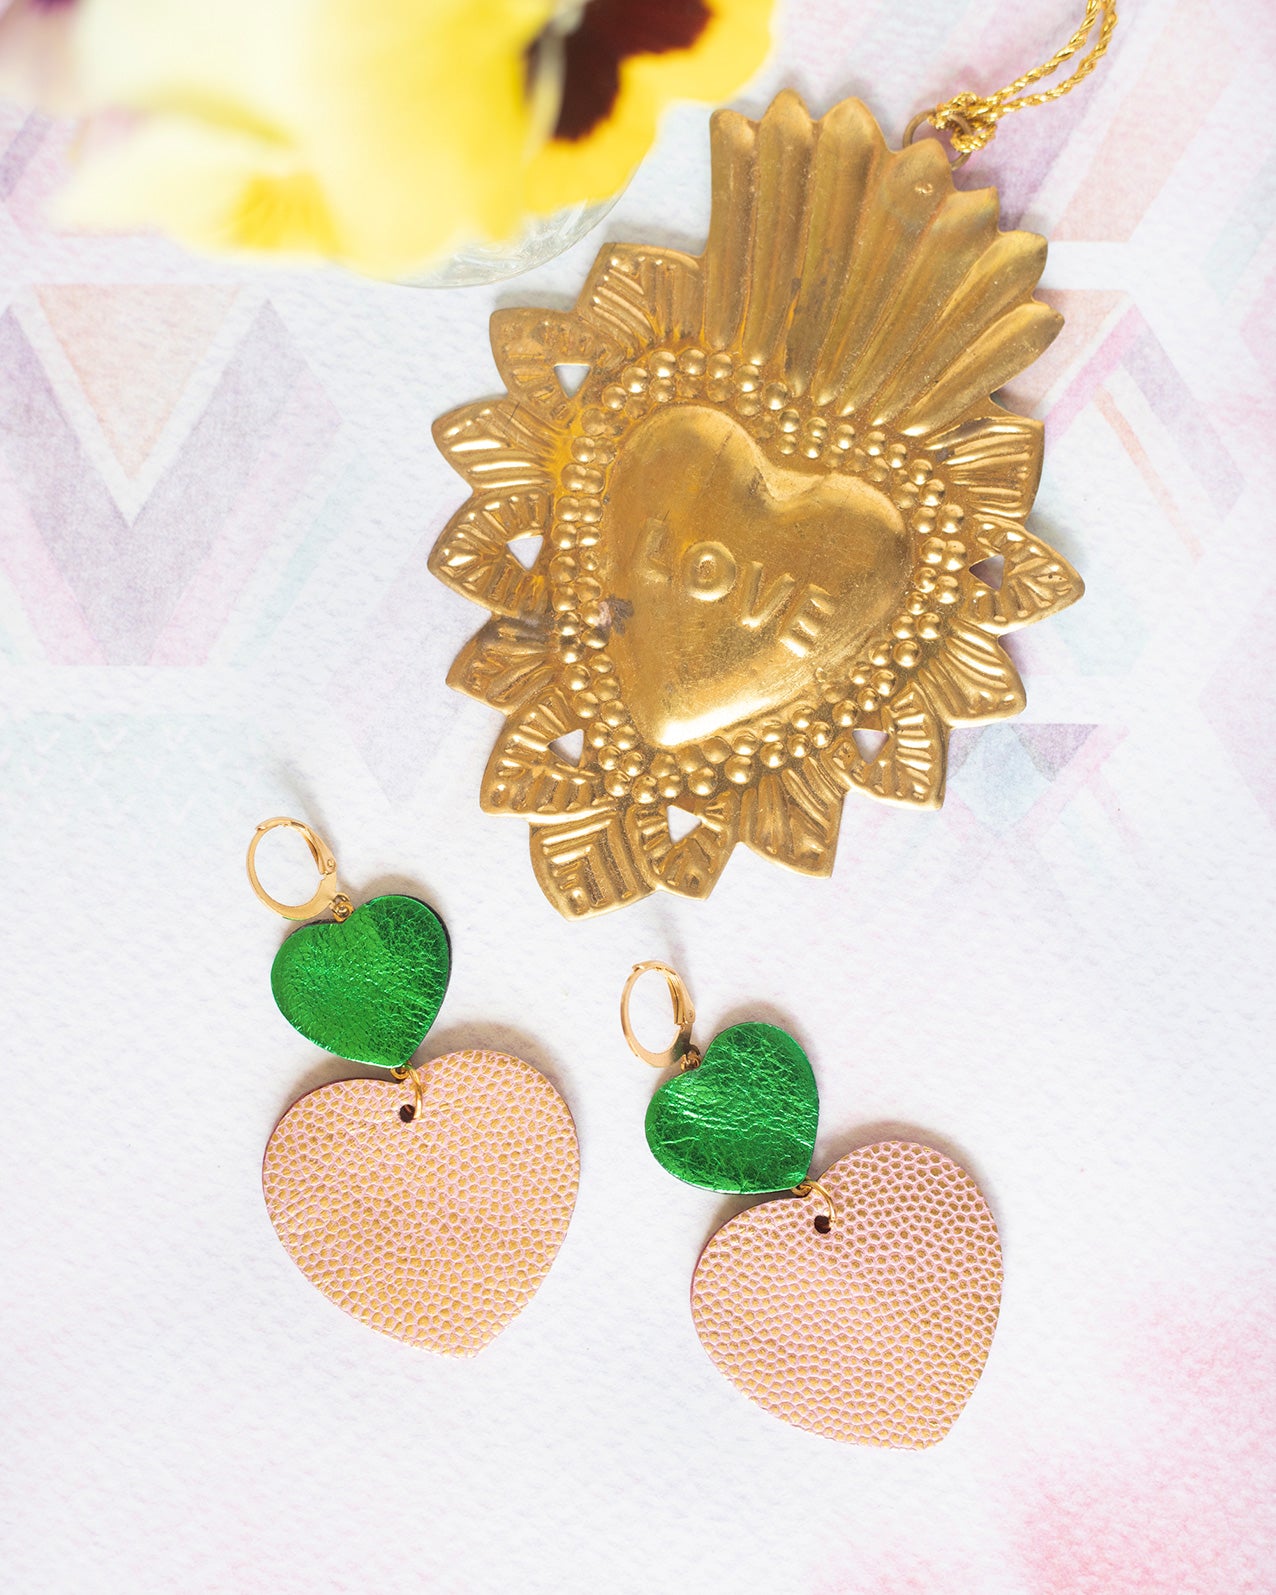 Boucles d'oreilles double Coeurs - cuir vert métallisé et rose à pois